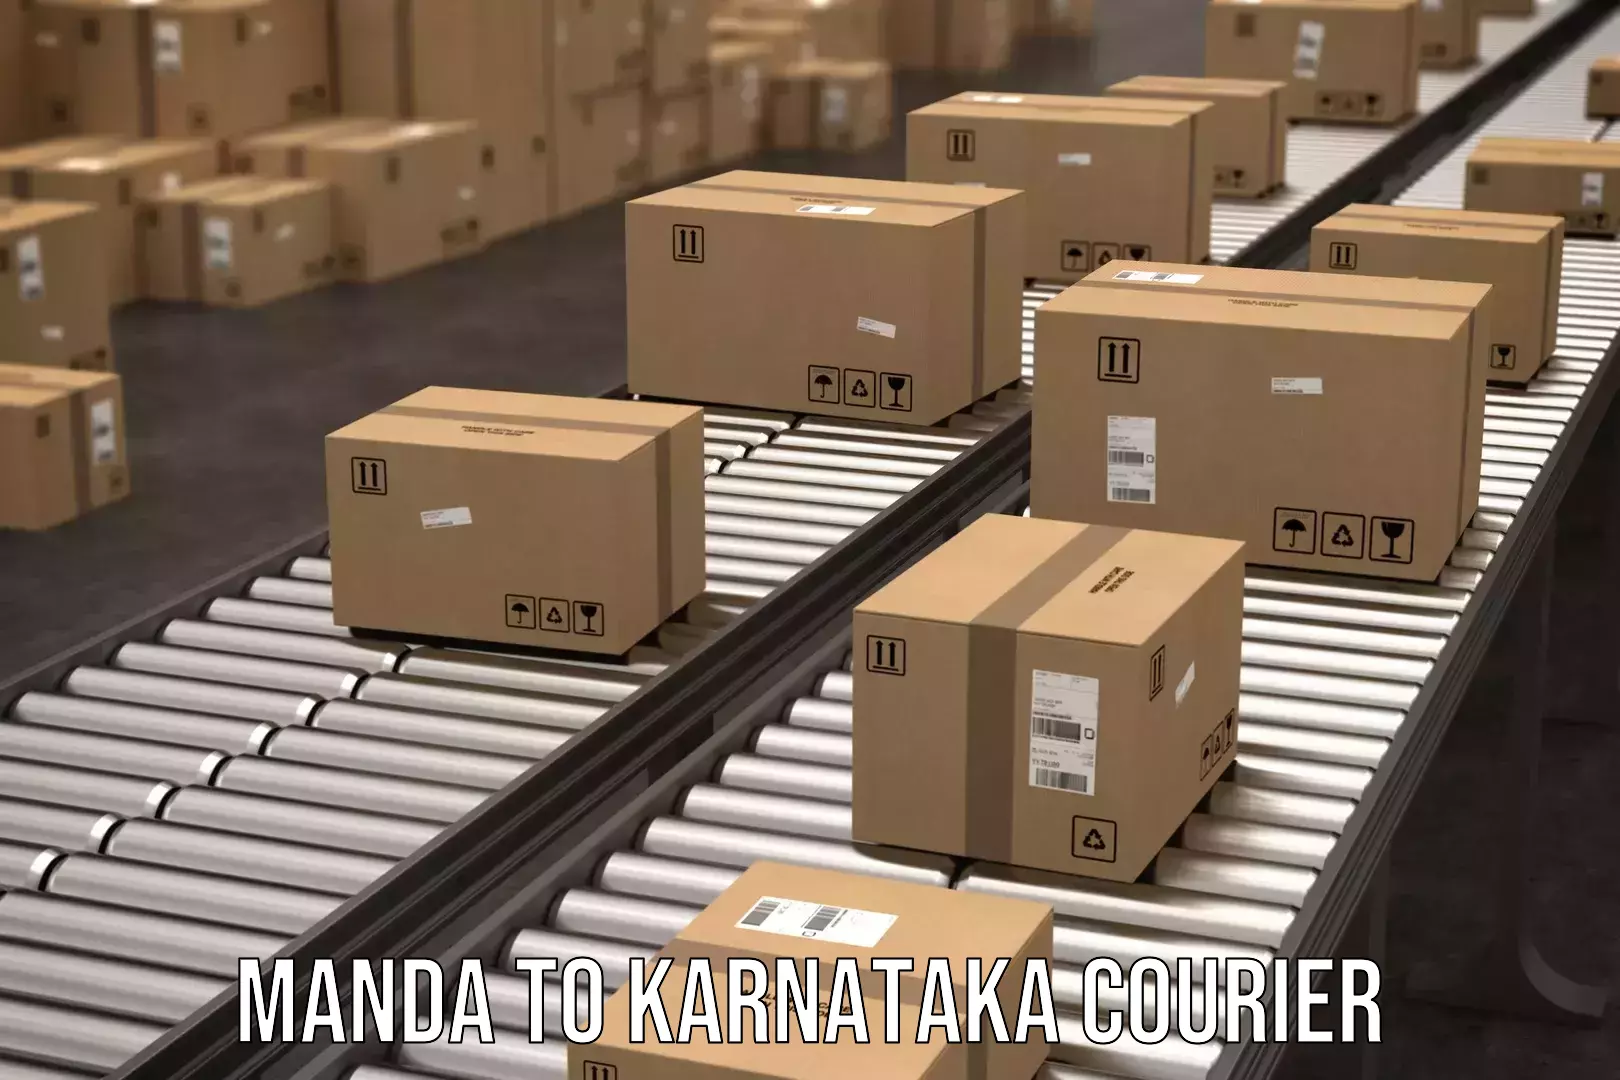 Door-to-door shipment Manda to Ukkadagatri